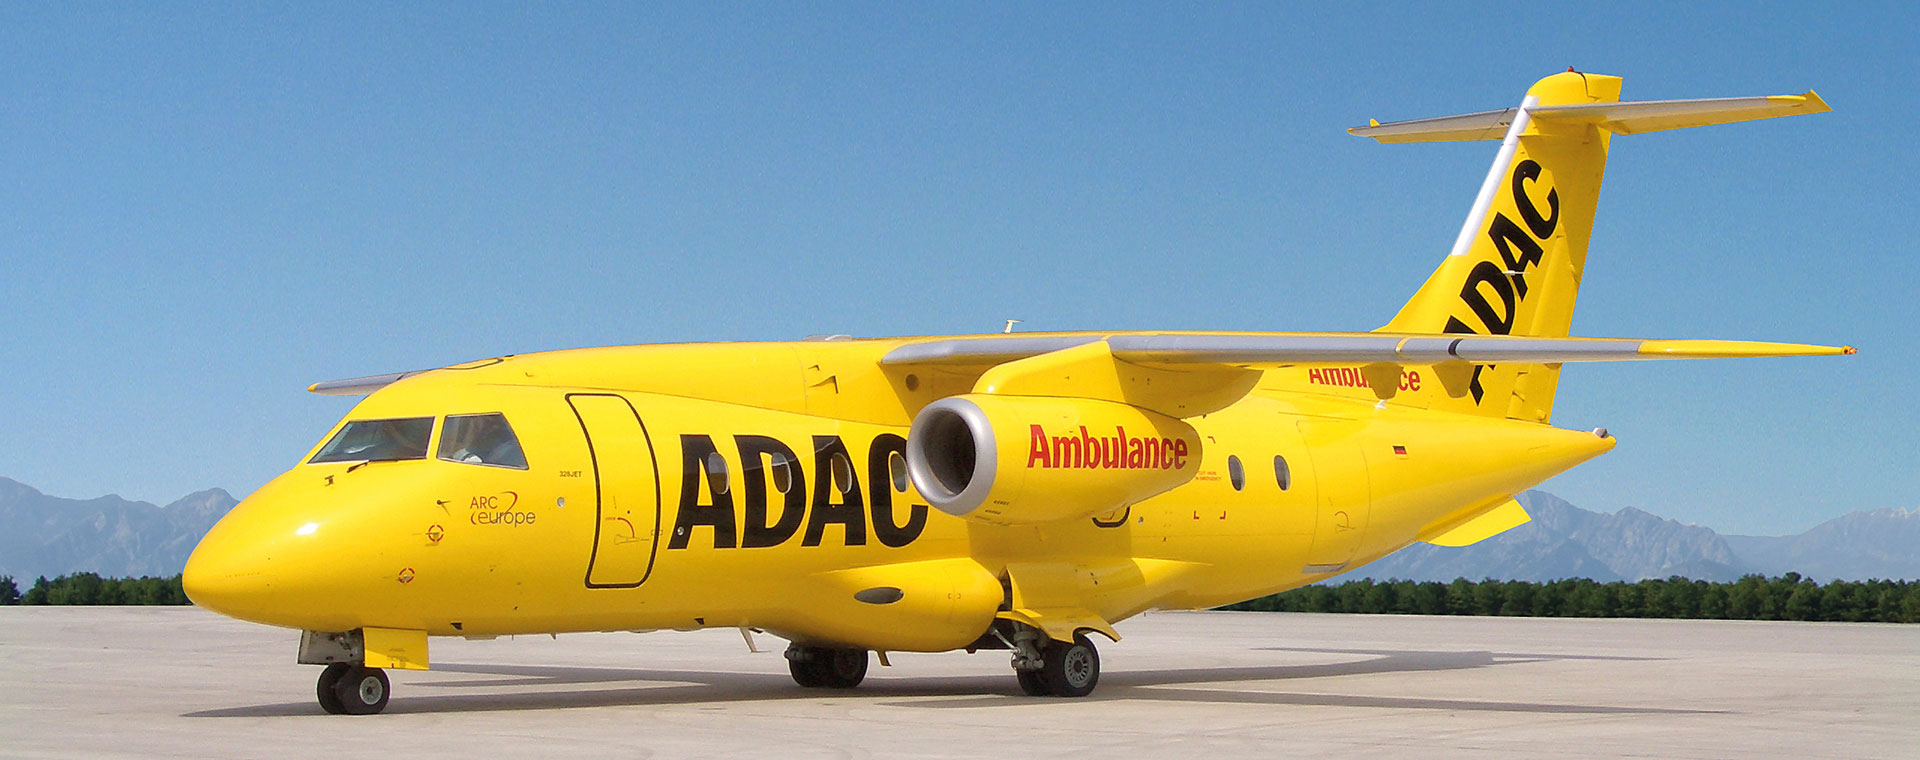 Aero-Dienst Air Ambulance Dornier 328Jet